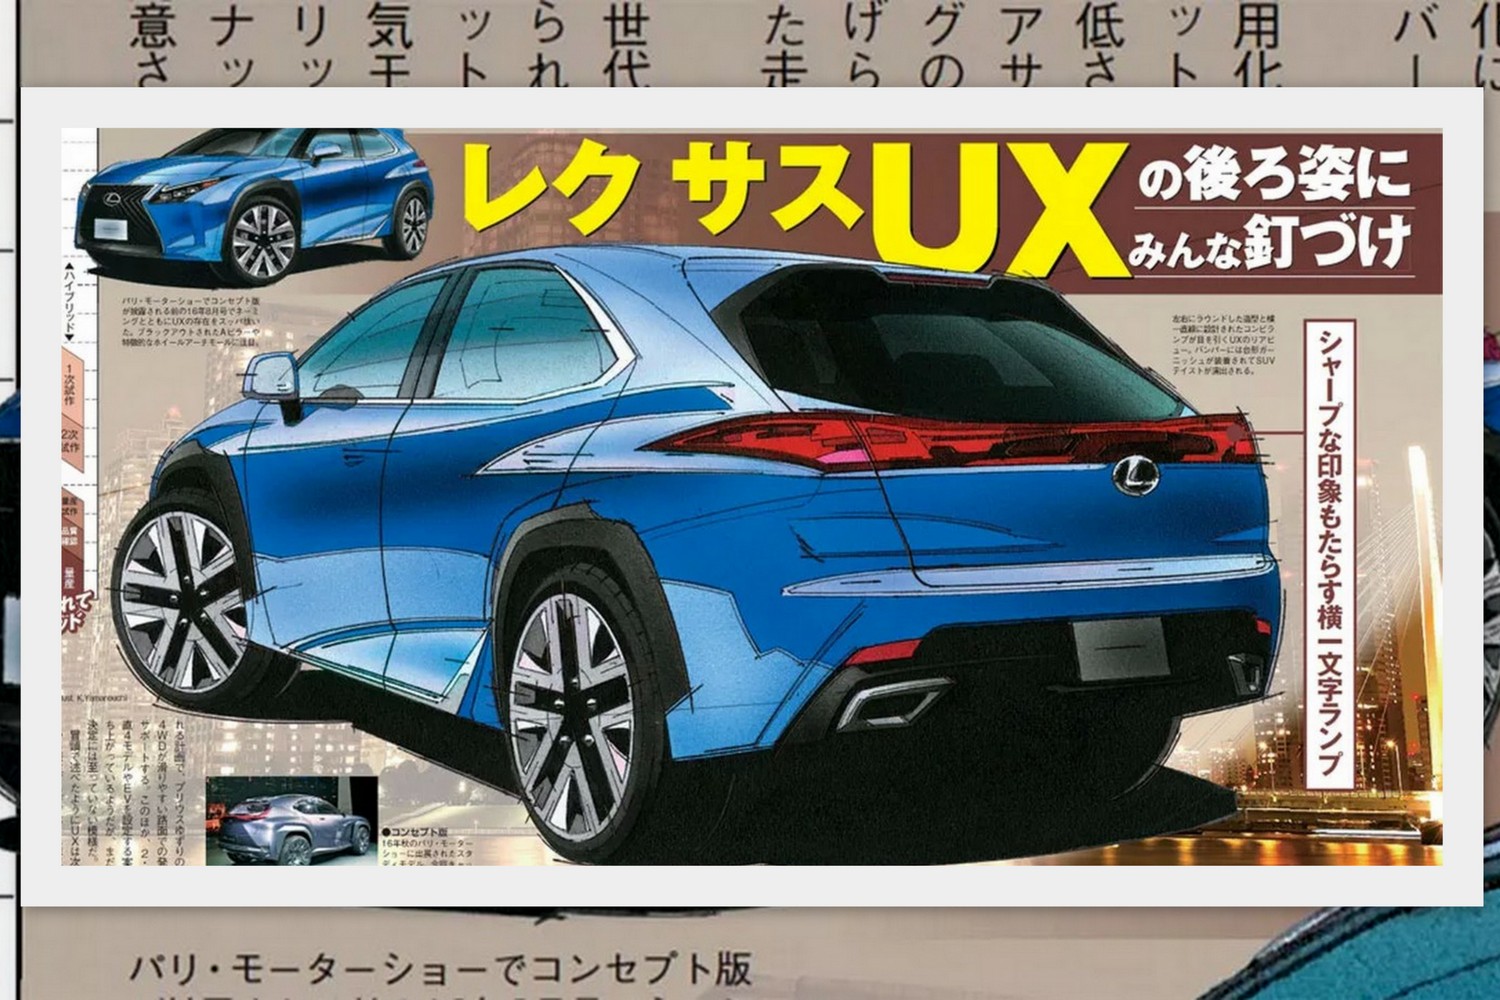 Crossoverrel váltaná kompakt modelljét a Lexus 3